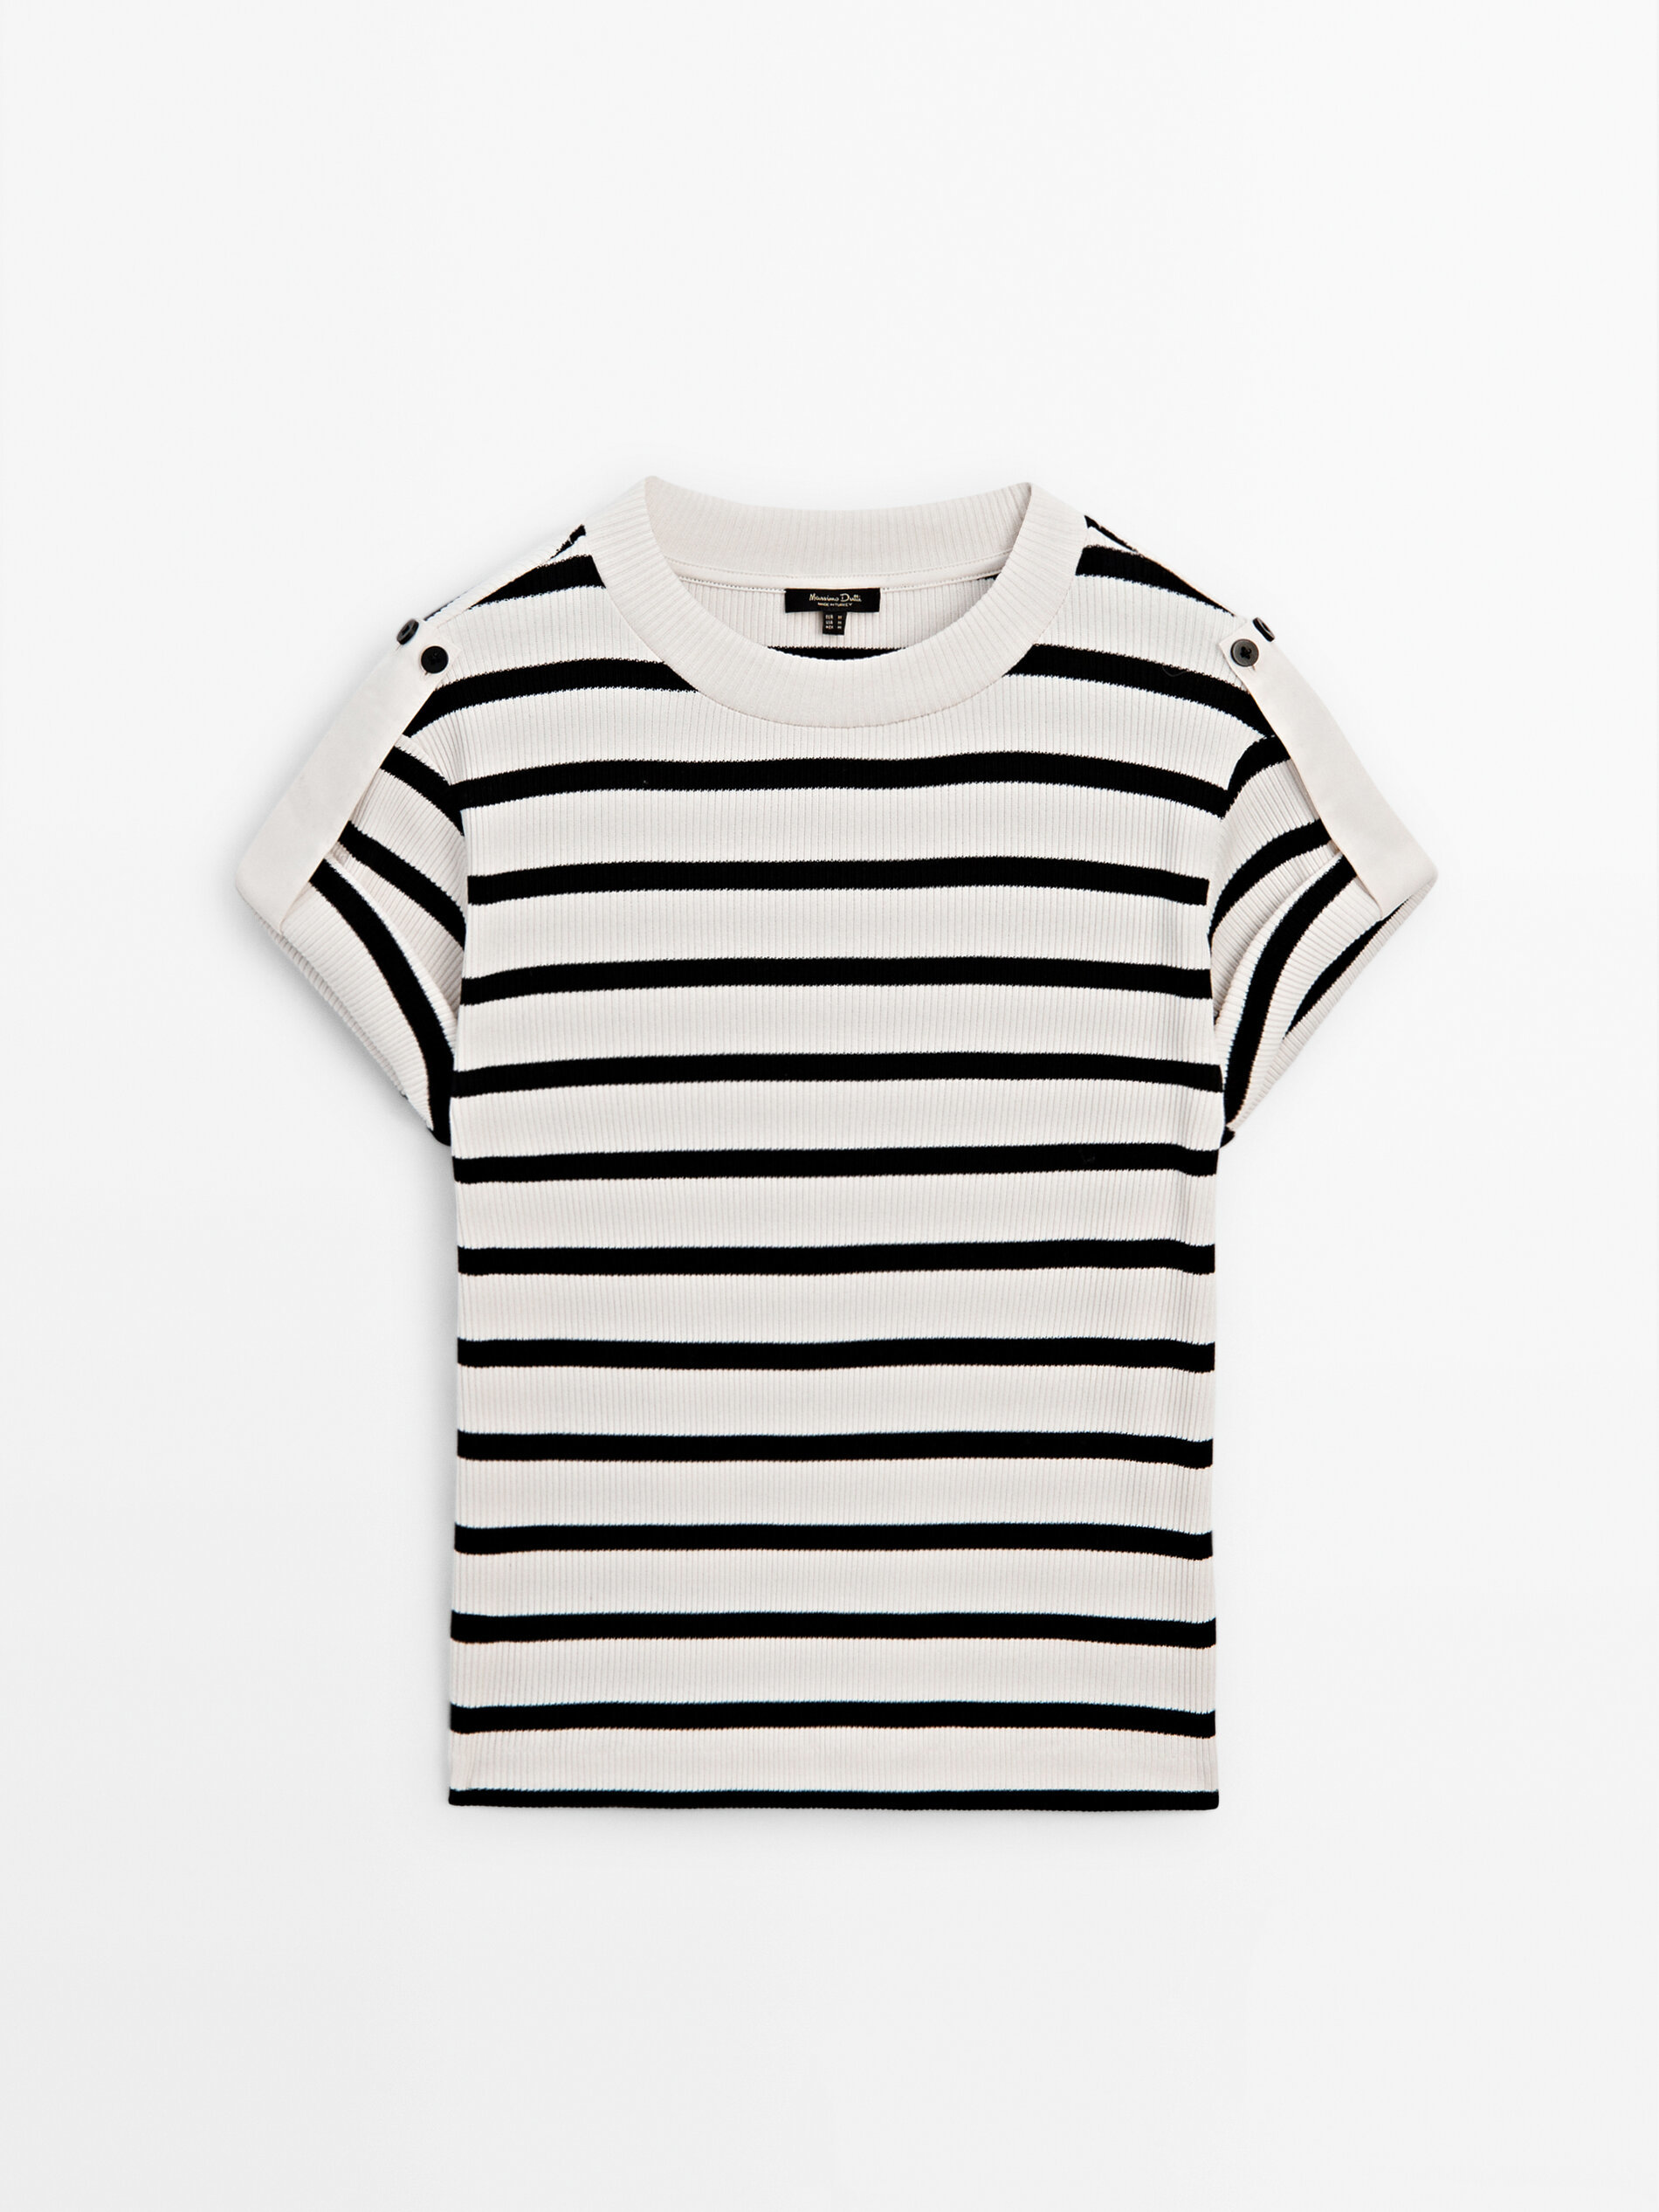 Ponte una camiseta de rayas marineras con hombros abotonados con estilo, de la mano de Massimo Dutti